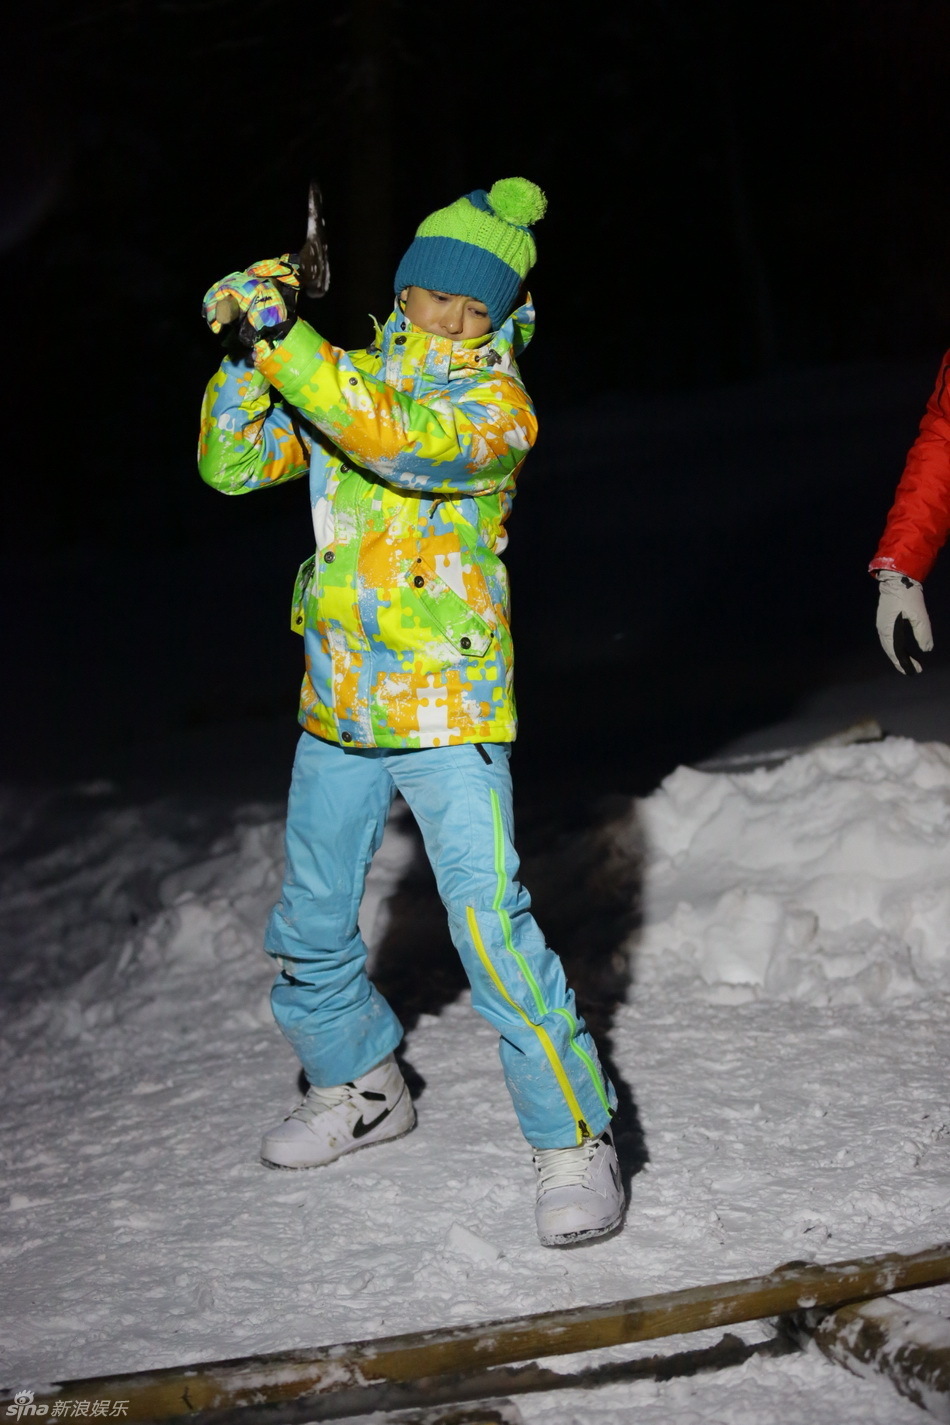 《爸爸去哪》爸爸冰天雪地劈木头 萌娃做雪橇开心